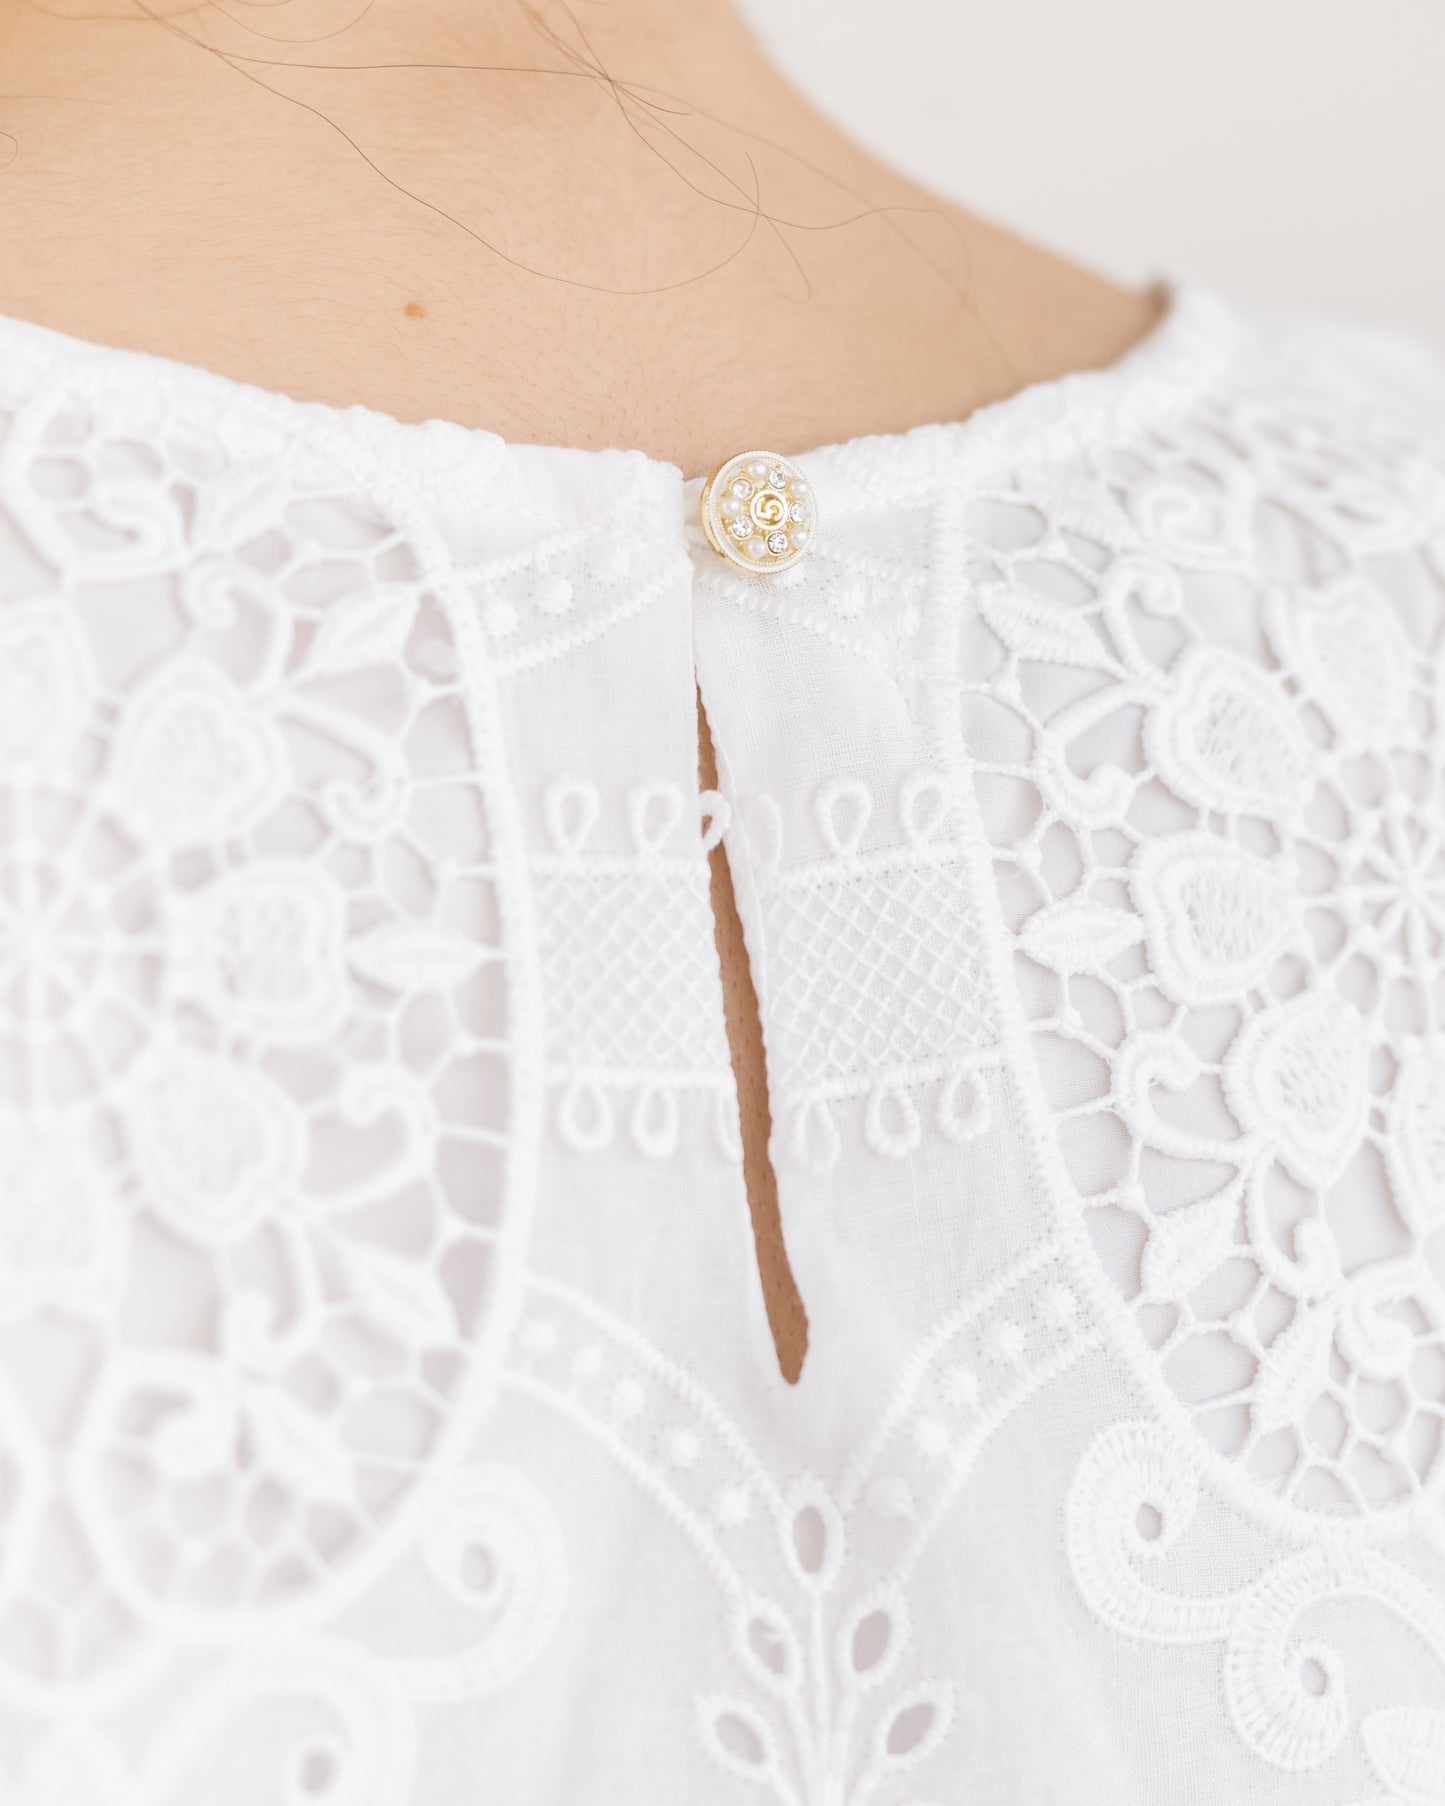 [PRE-ORDER] Omnia Embroidery Shift Dress